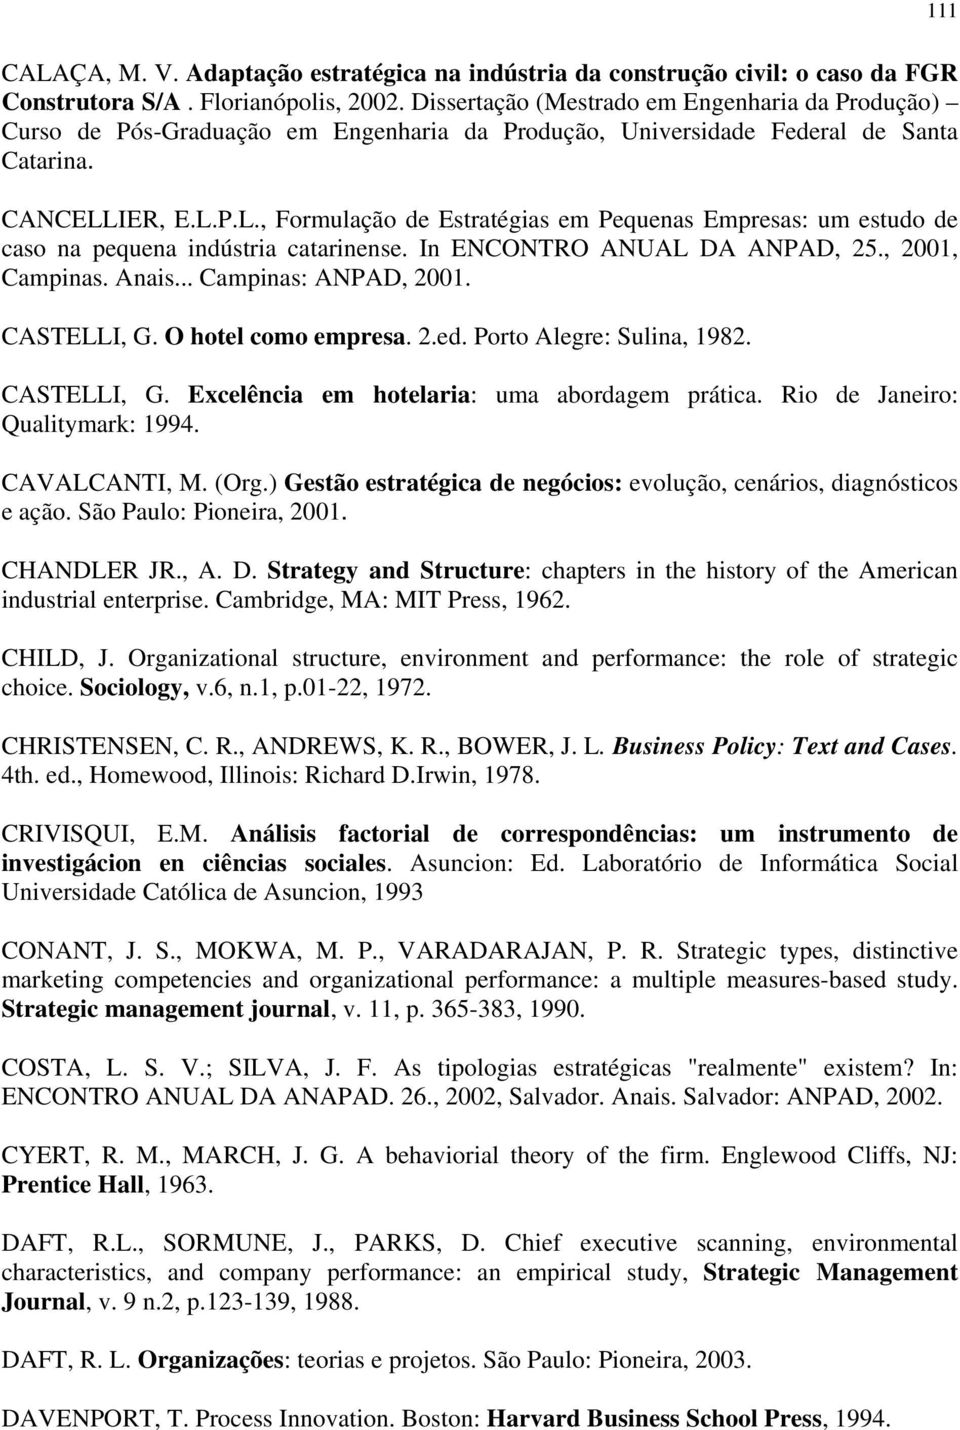 IER, E.L.P.L., Formulação de Estratégias em Pequenas Empresas: um estudo de caso na pequena indústria catarinense. In ENCONTRO ANUAL DA ANPAD, 25., 2001, Campinas. Anais... Campinas: ANPAD, 2001.